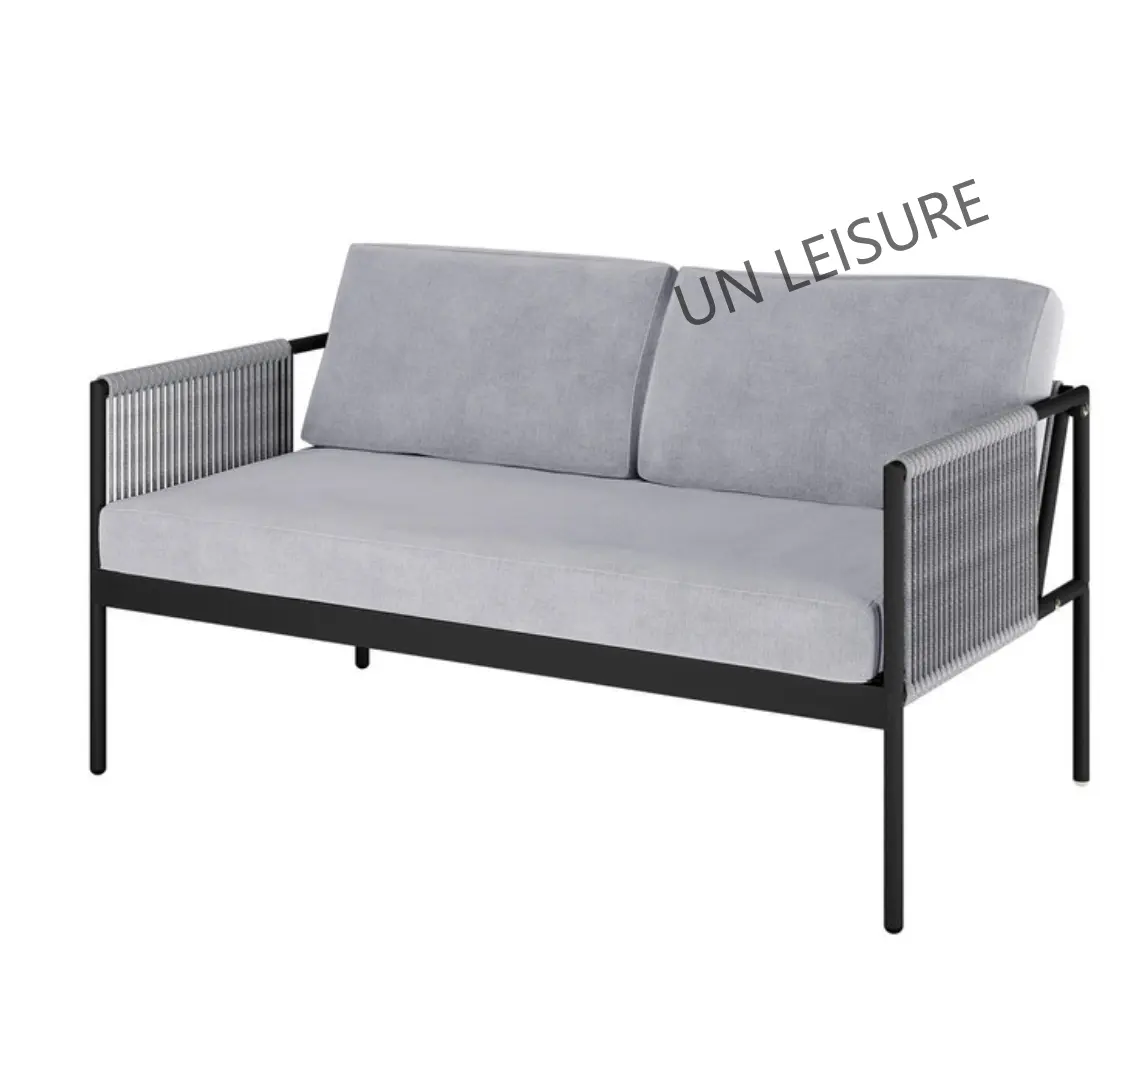 In alluminio nuvola sezionale reclinabile mobili da esterno set di mobili da giardino per ristorante bianco all'aperto lounge